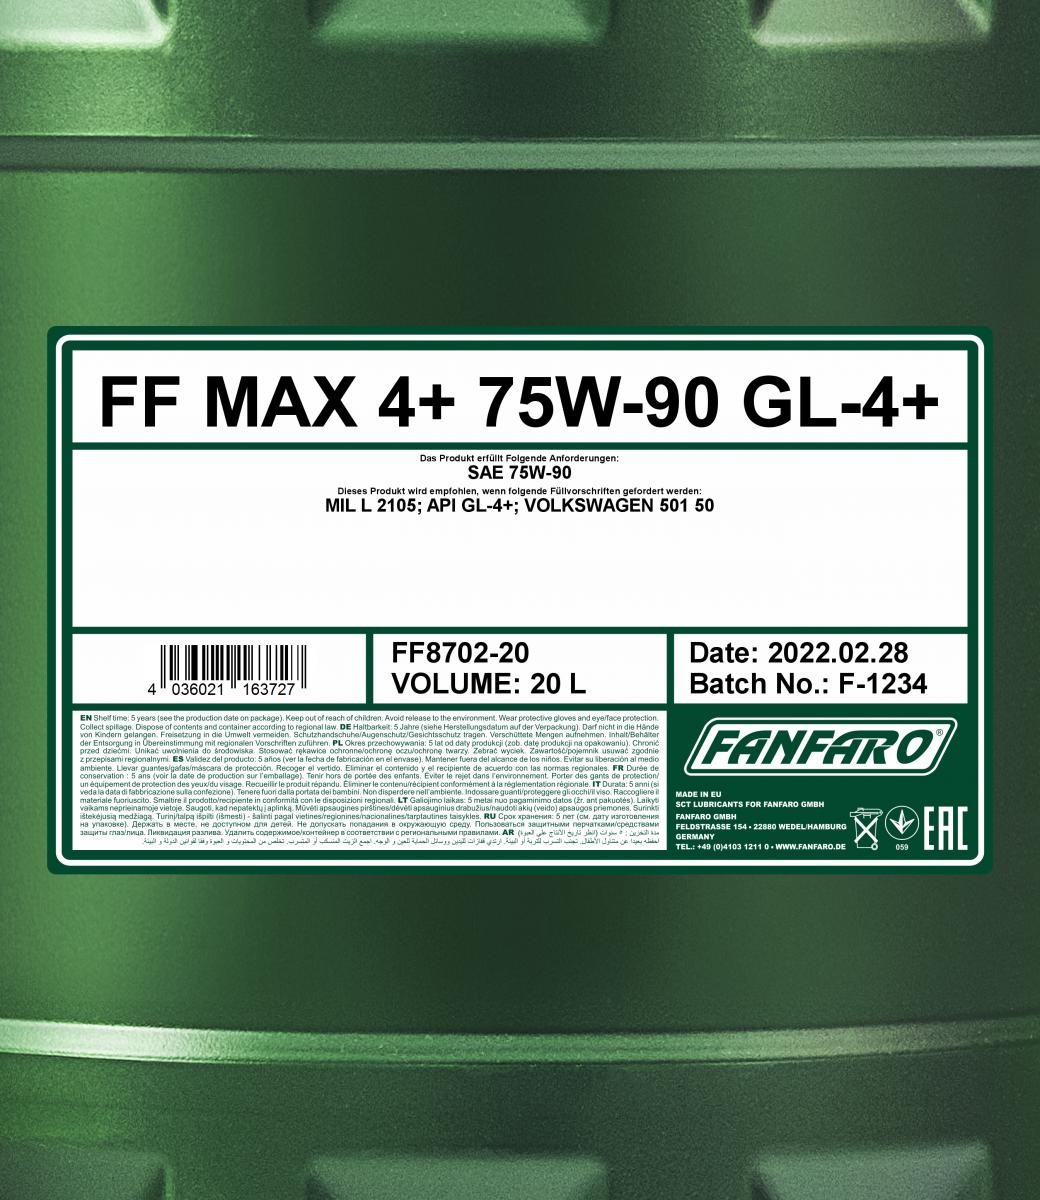 FANFARO Schaltgetriebeöl FF8702-20